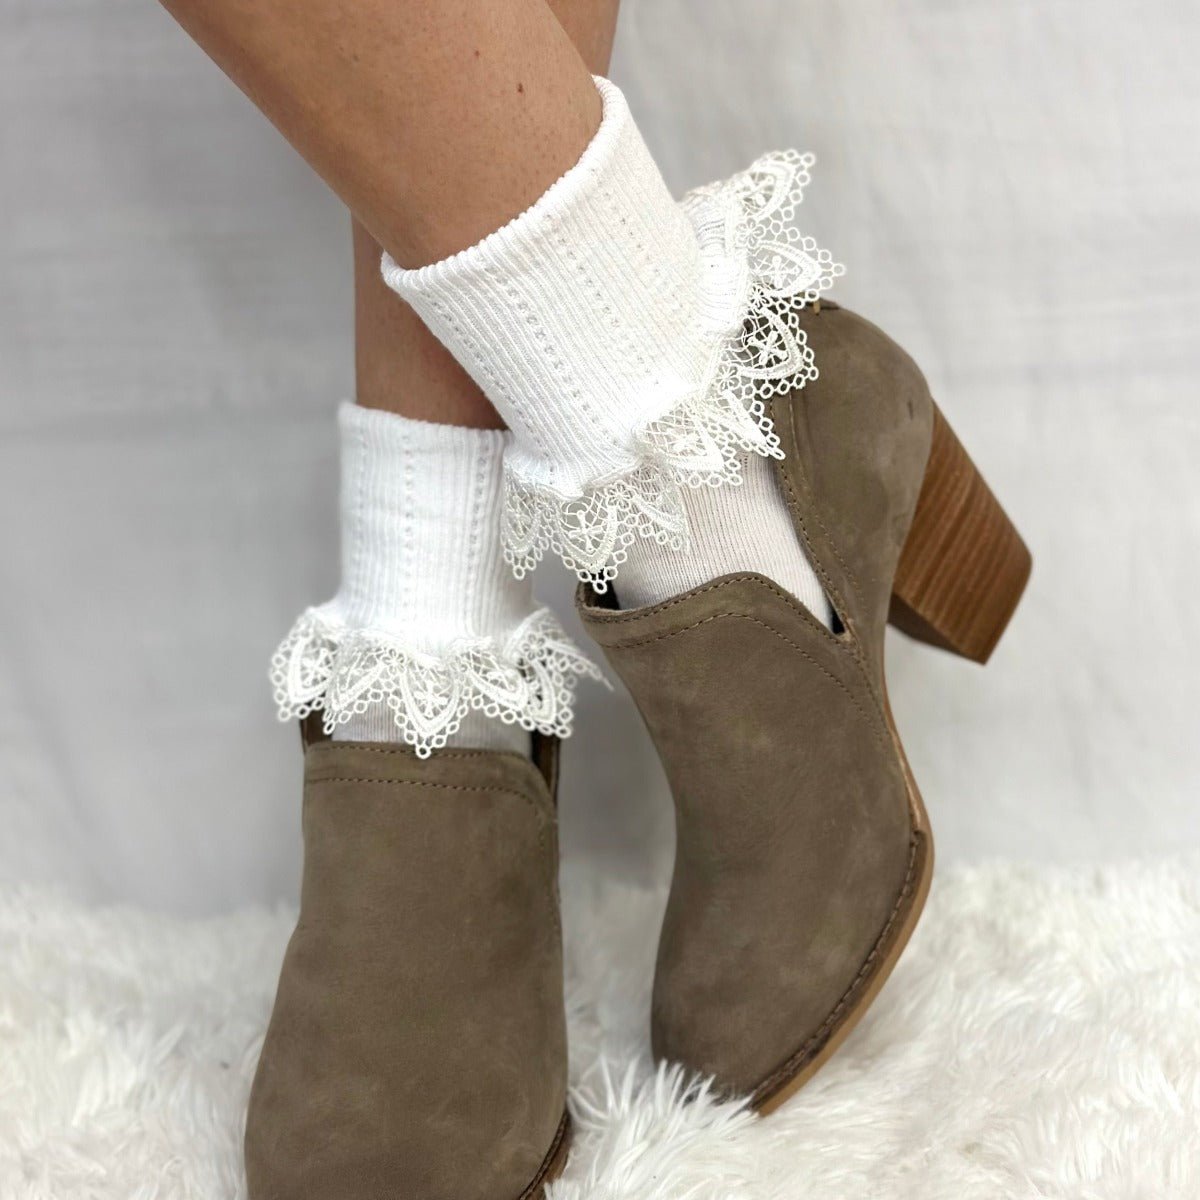 Chantilly  lace ankle cuff socks women - white , cute socks for booties hosiery